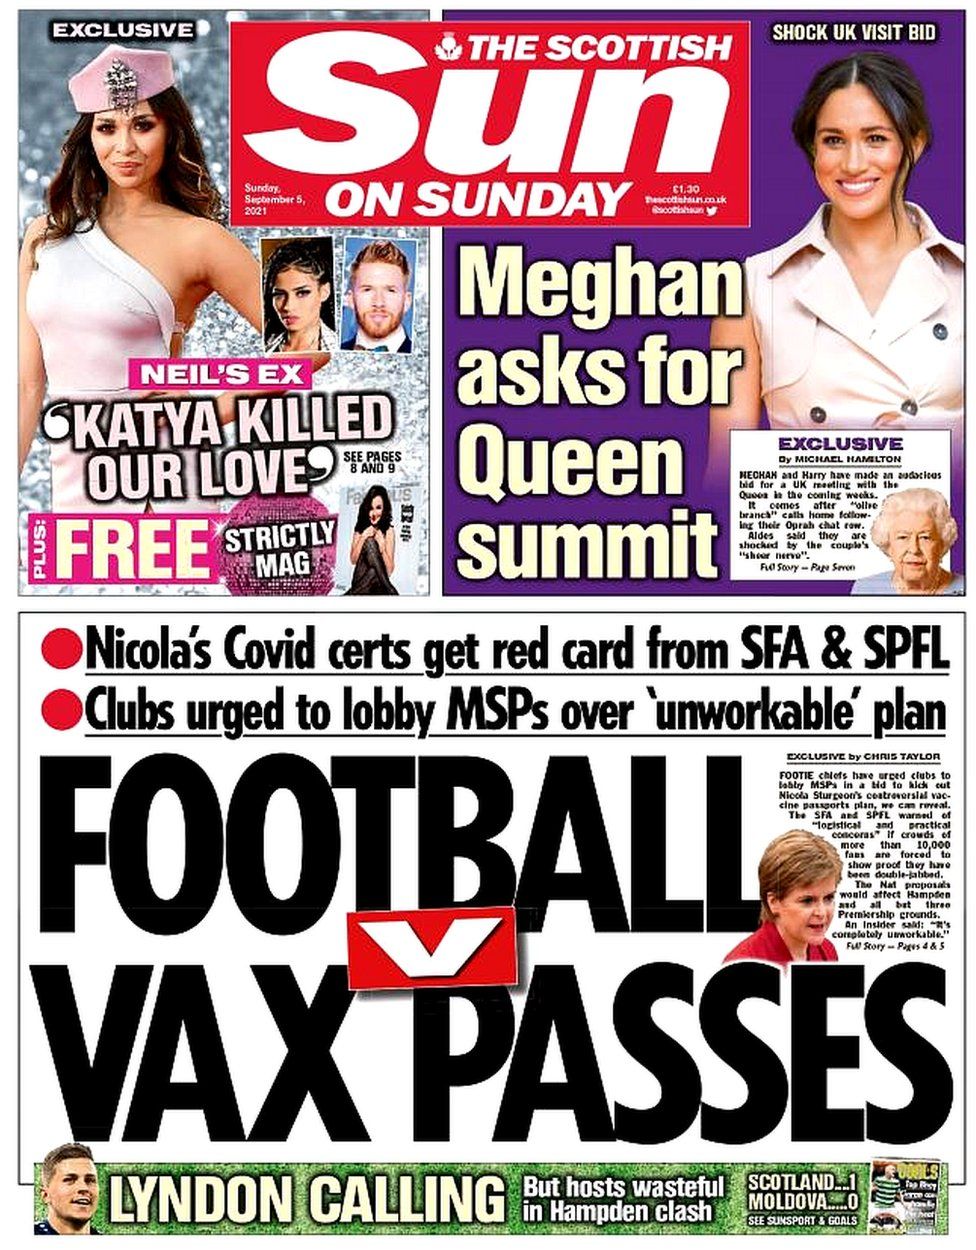 The Scottish Sun on Sunday